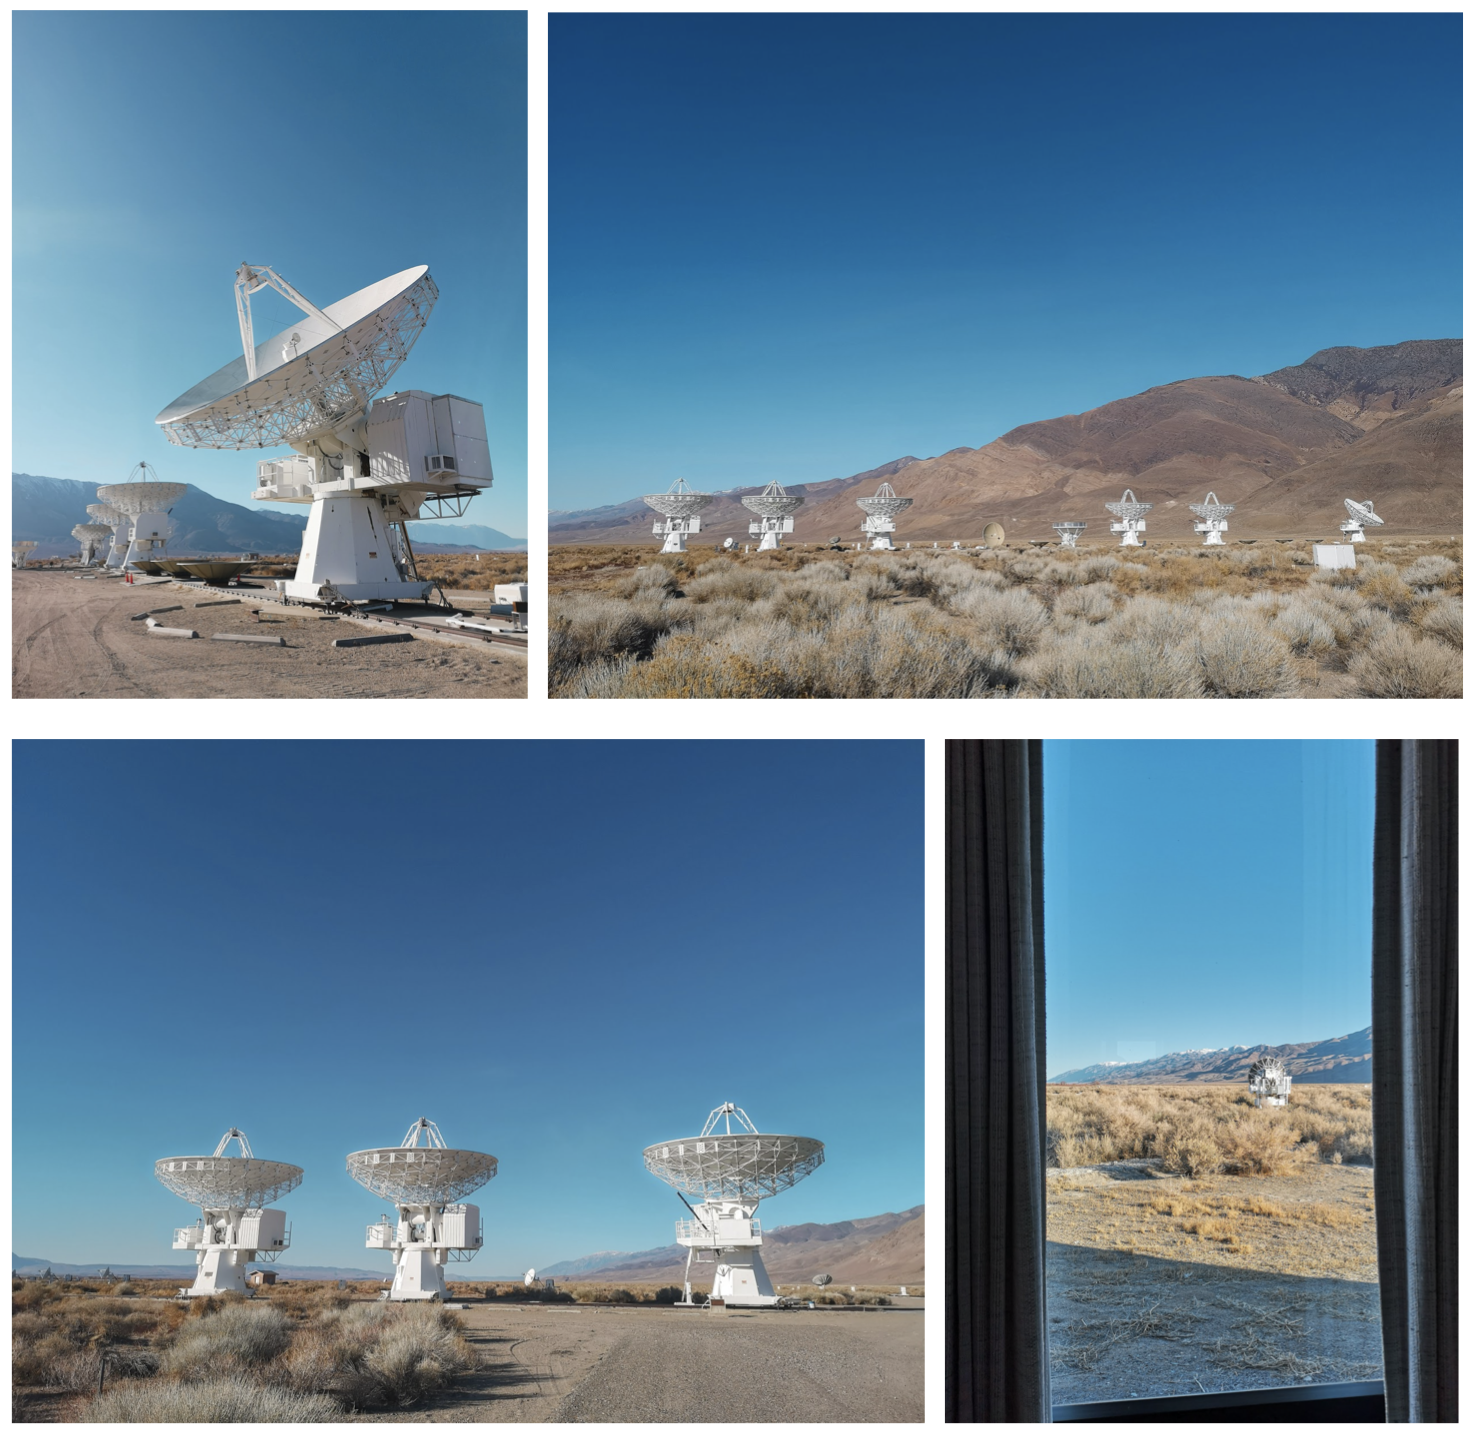 bildecollage av observatoriet Owens Valley Radio Observatory